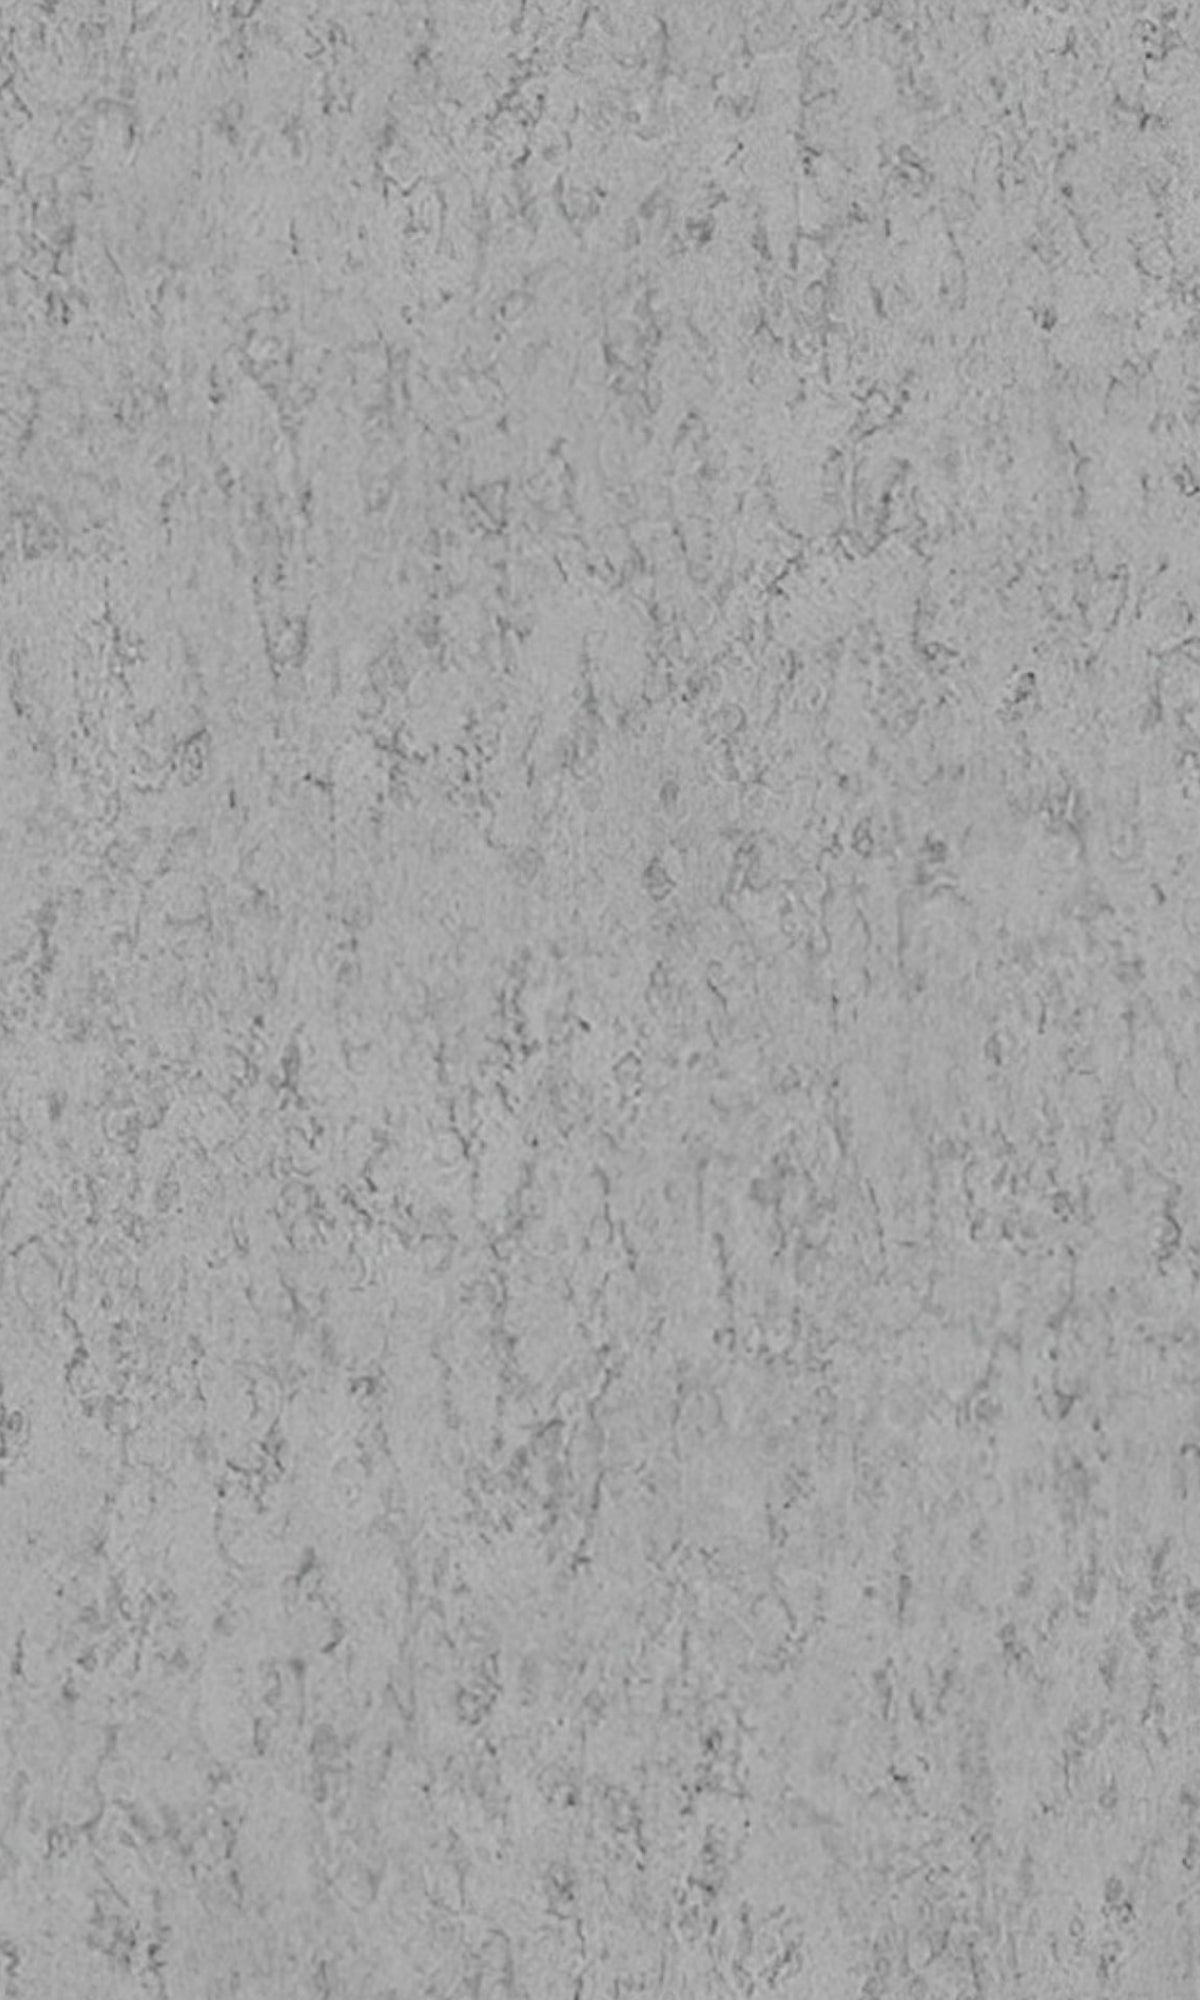 Moonstone Marble Like Textured Vinyl Commercial Wallpaper C7565